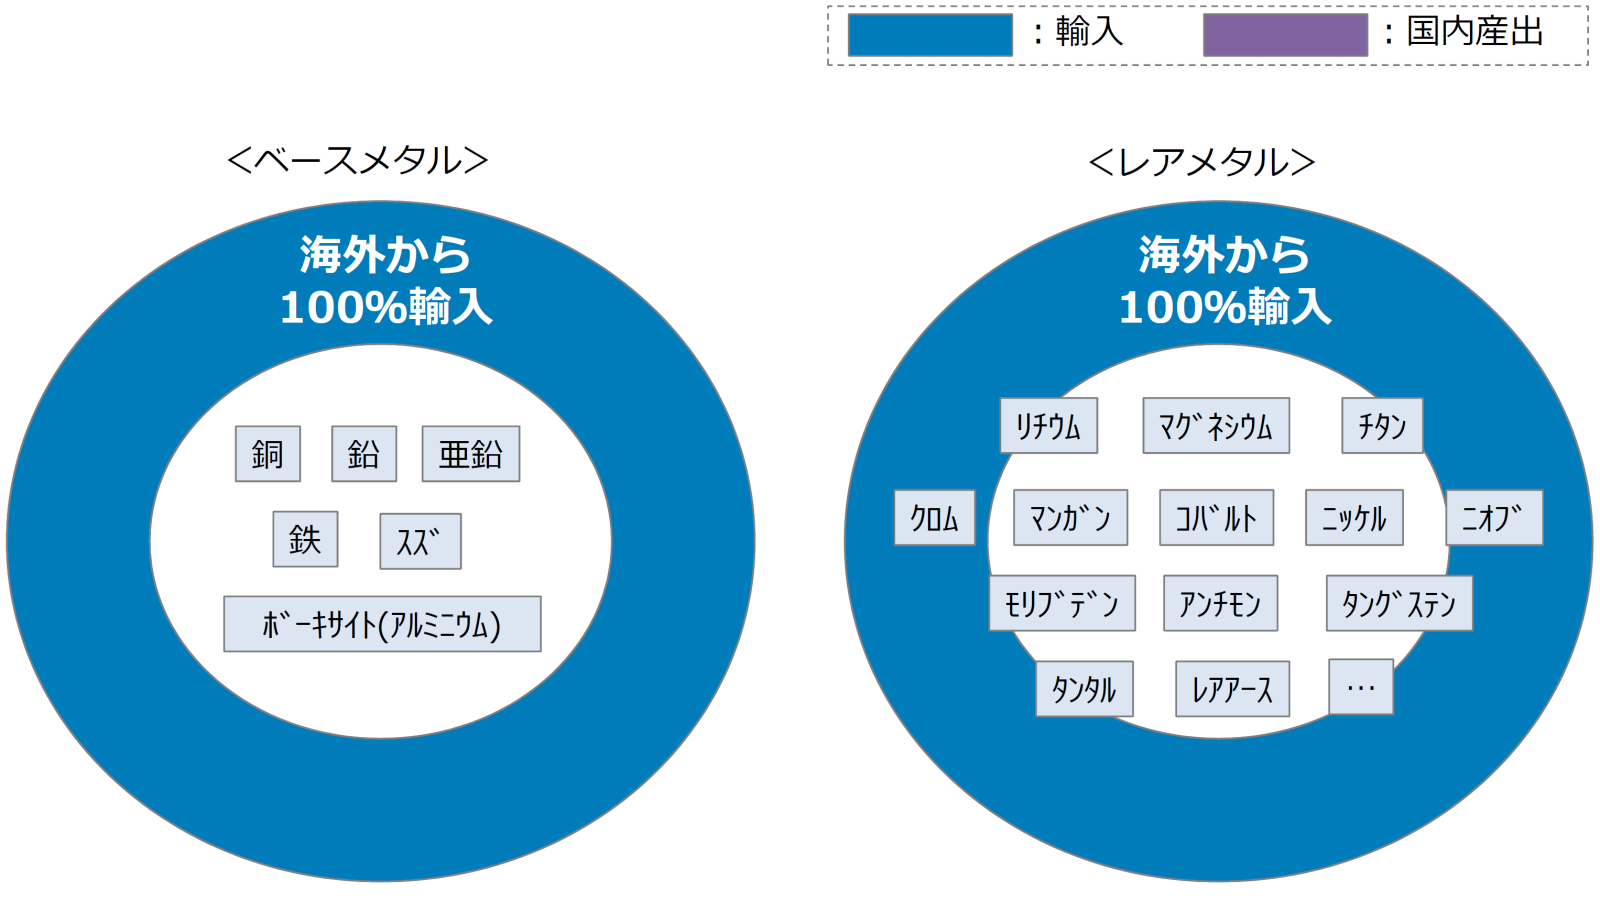 ベースメタルとレアメタルの種類と、100％が輸入であることを示したグラフです